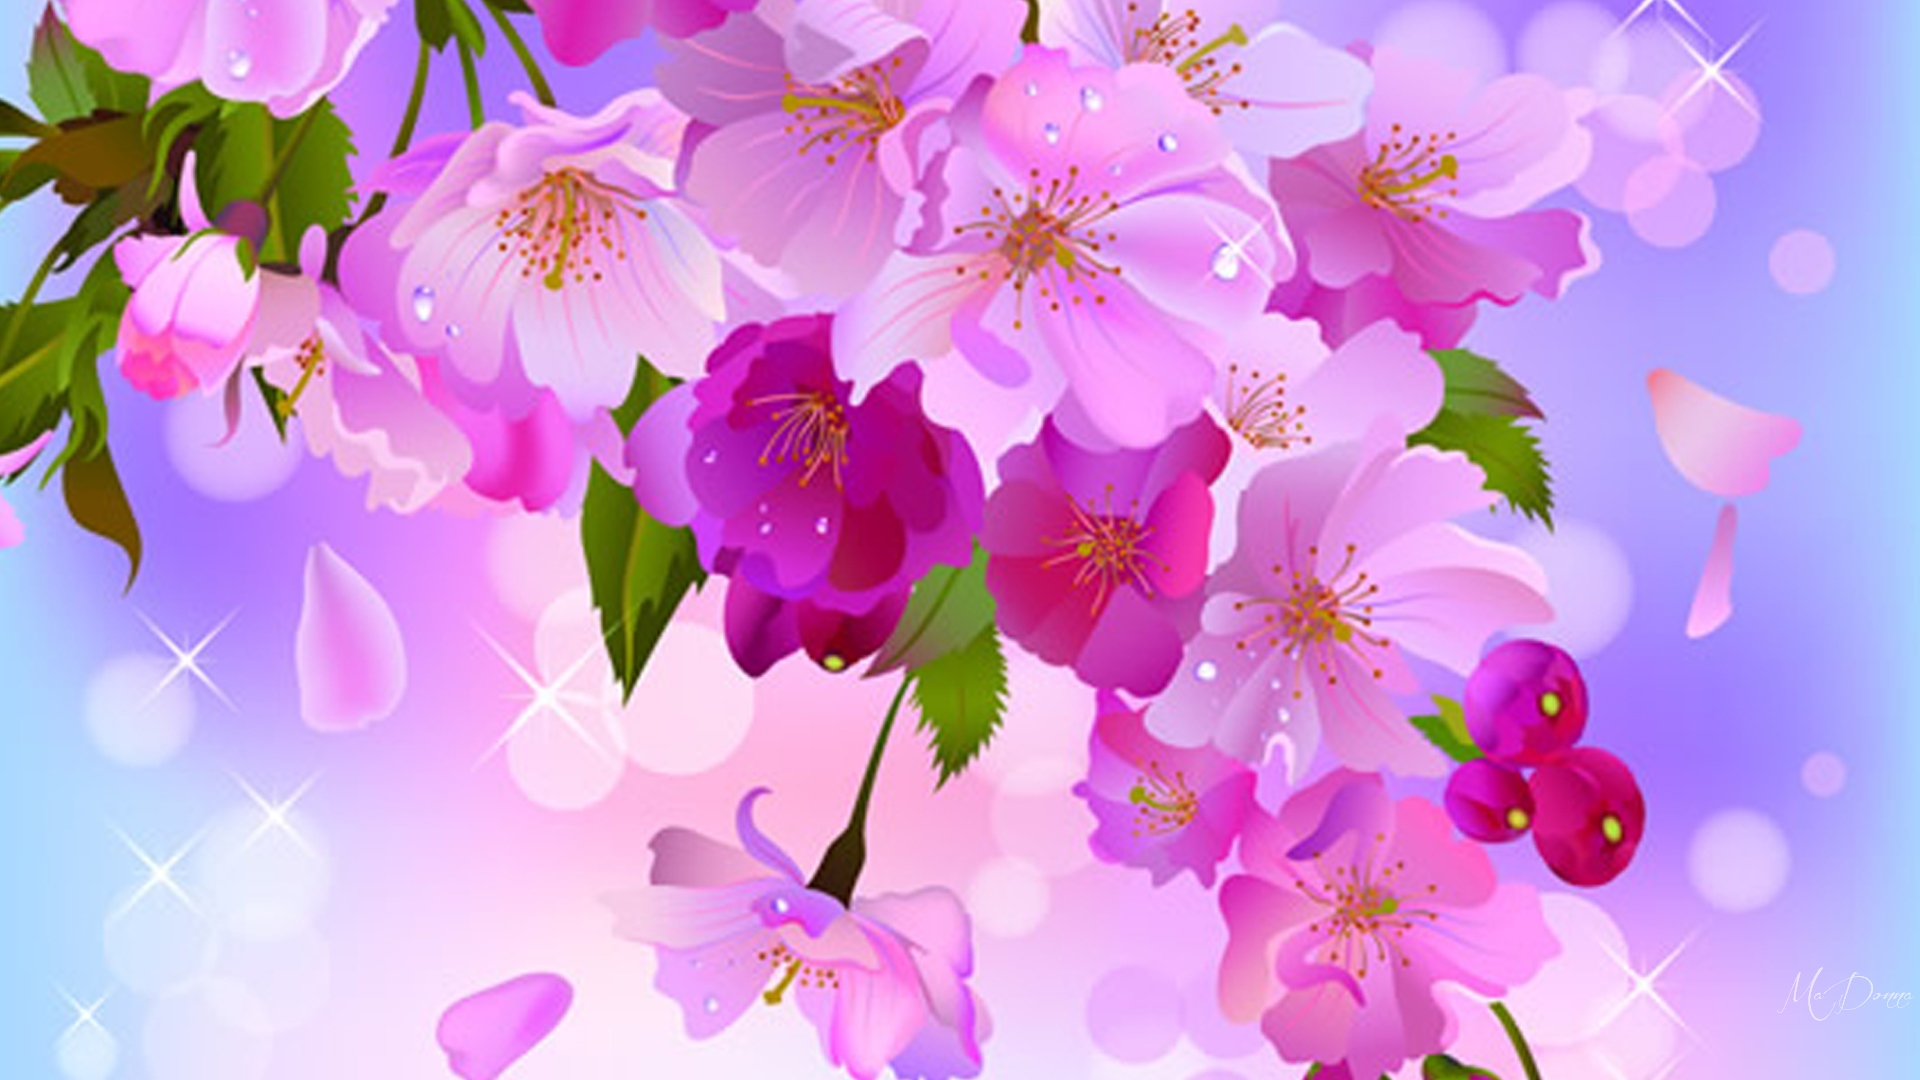 150 Hình nền hoa anh đào tuyệt đẹp cho màn hình máy tính  Hoa Sakura  wallpaper  VFOVN